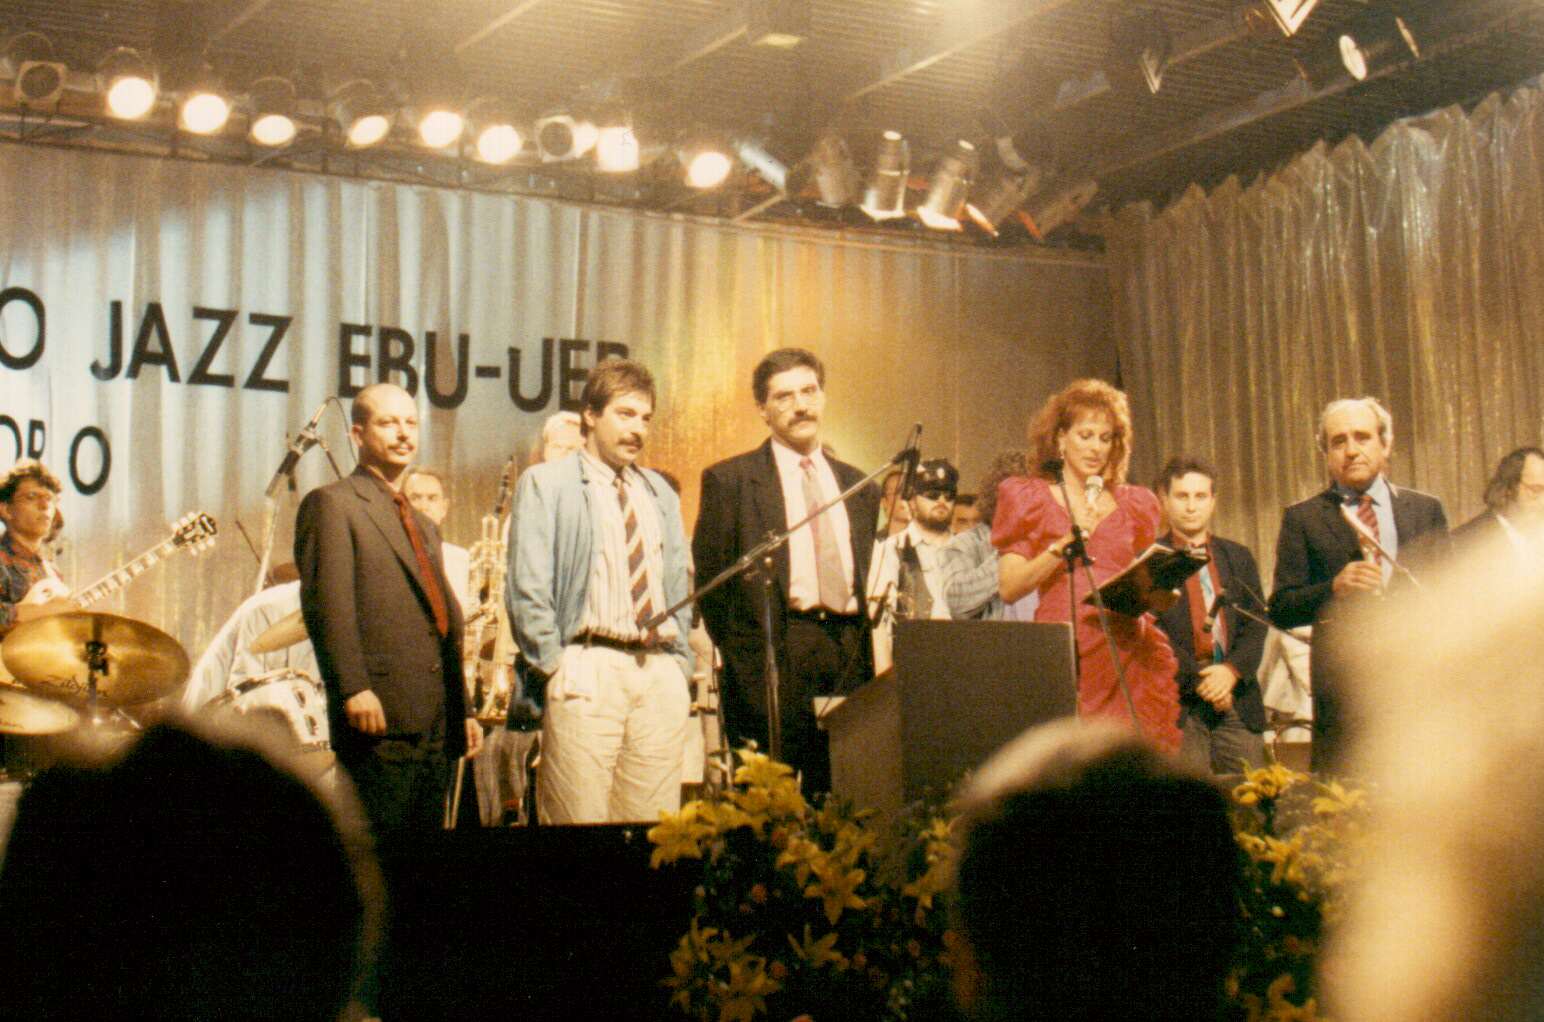 Eurovisione Lignano Sabbiadoro - Claudio Lugo, Marco Tiso, Gioia Meloni e Adriano Mazzoletti - 1989